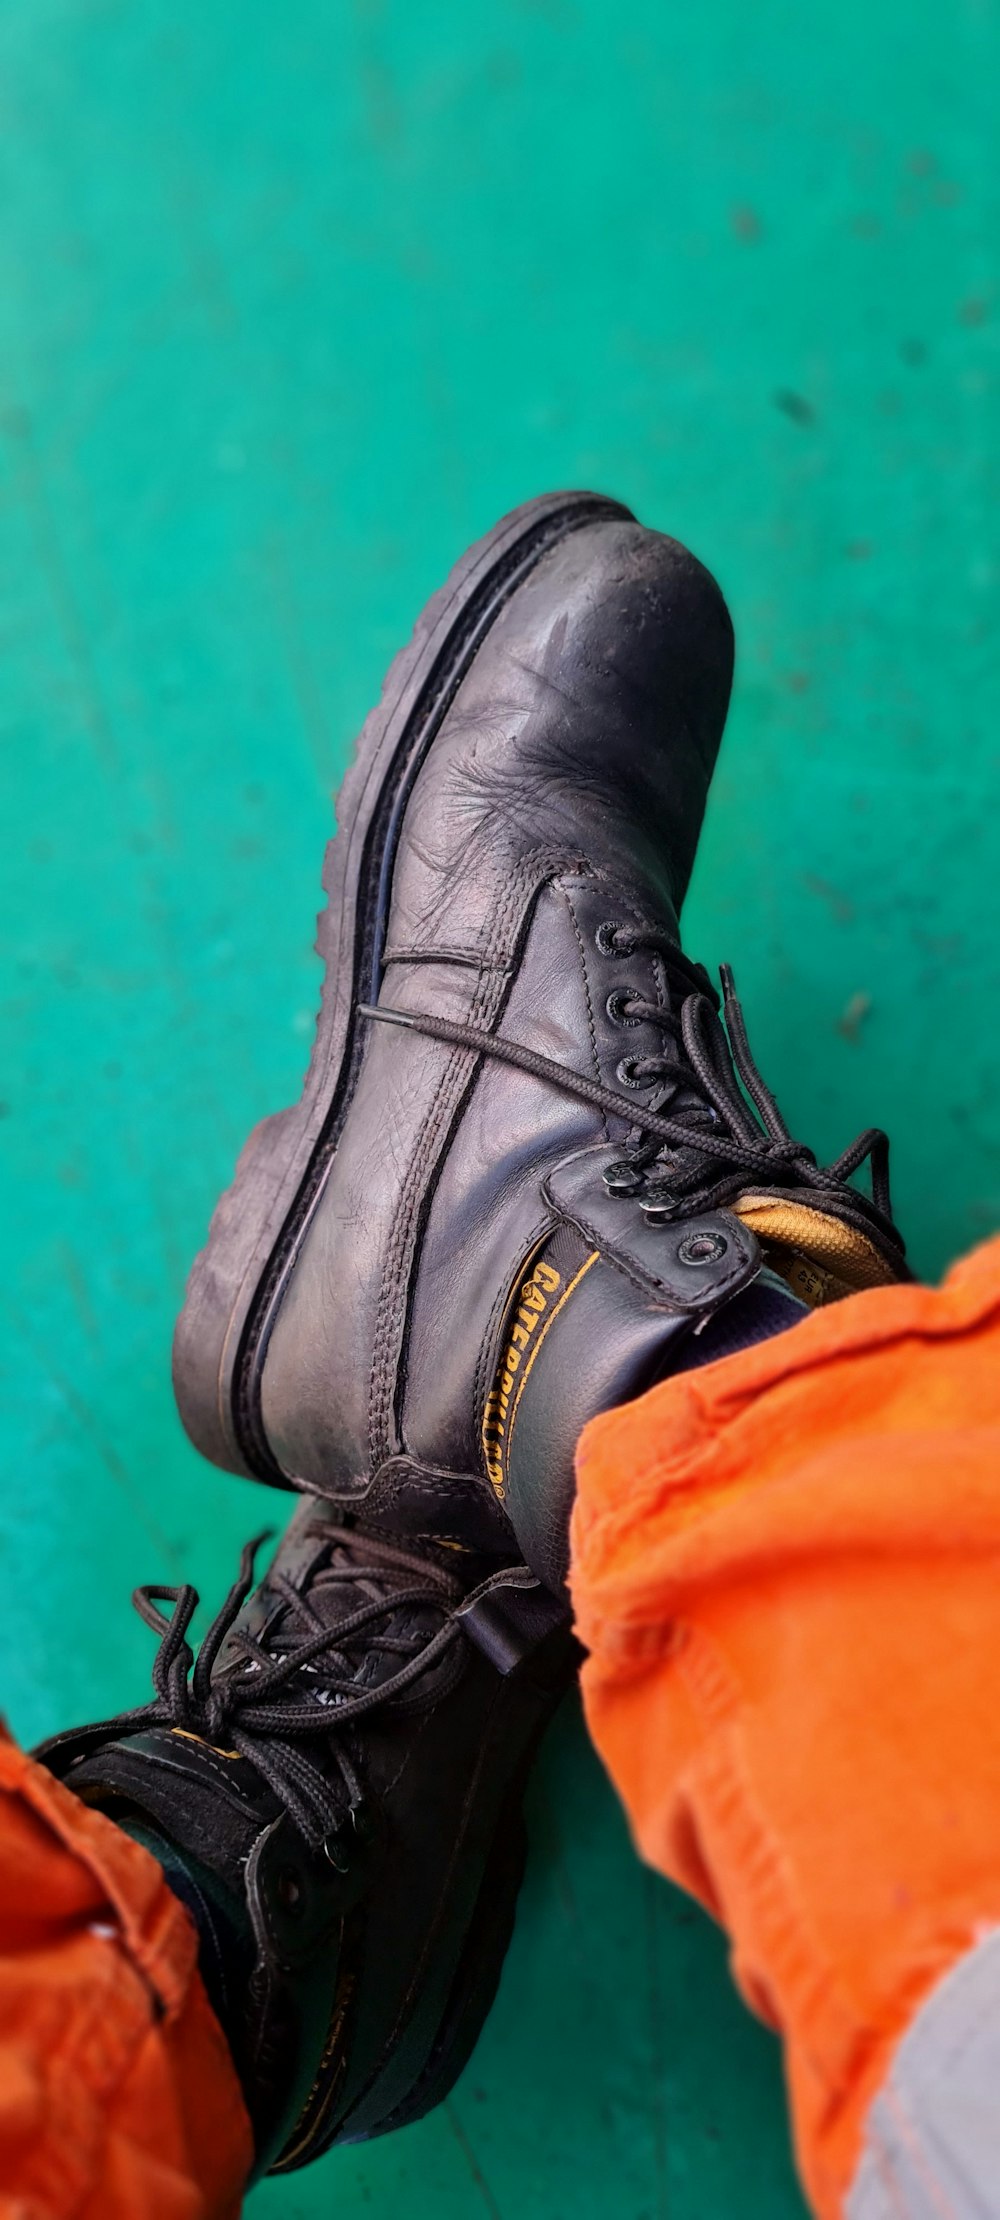 pessoa vestindo bota de trabalho de couro preto